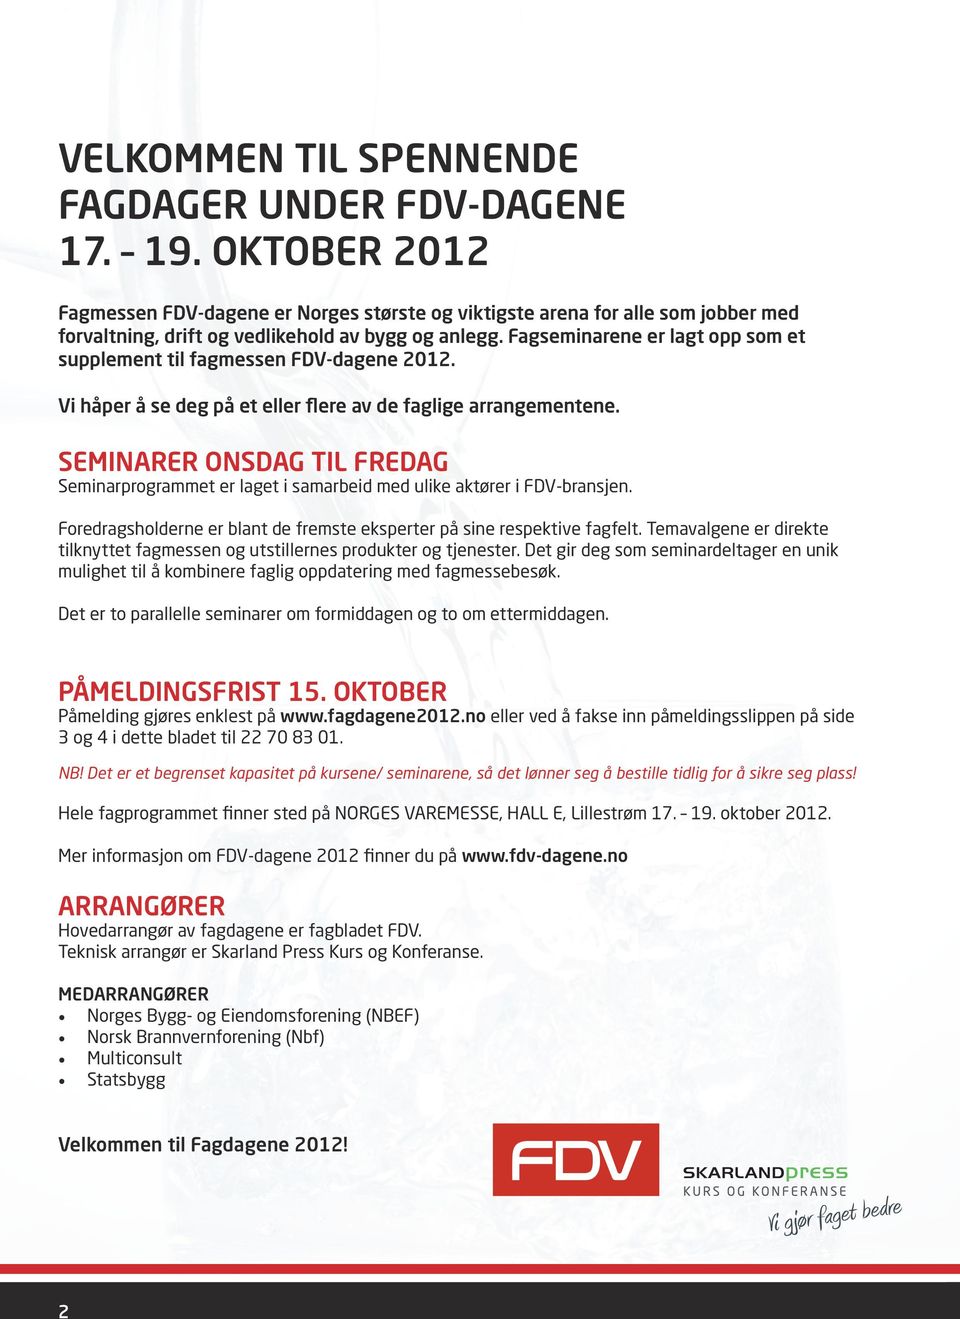 Fagseminarene er lagt opp som et supplement til fagmessen FDV-dagene 2012. Vi håper å se deg på et eller flere av de faglige arrangementene.